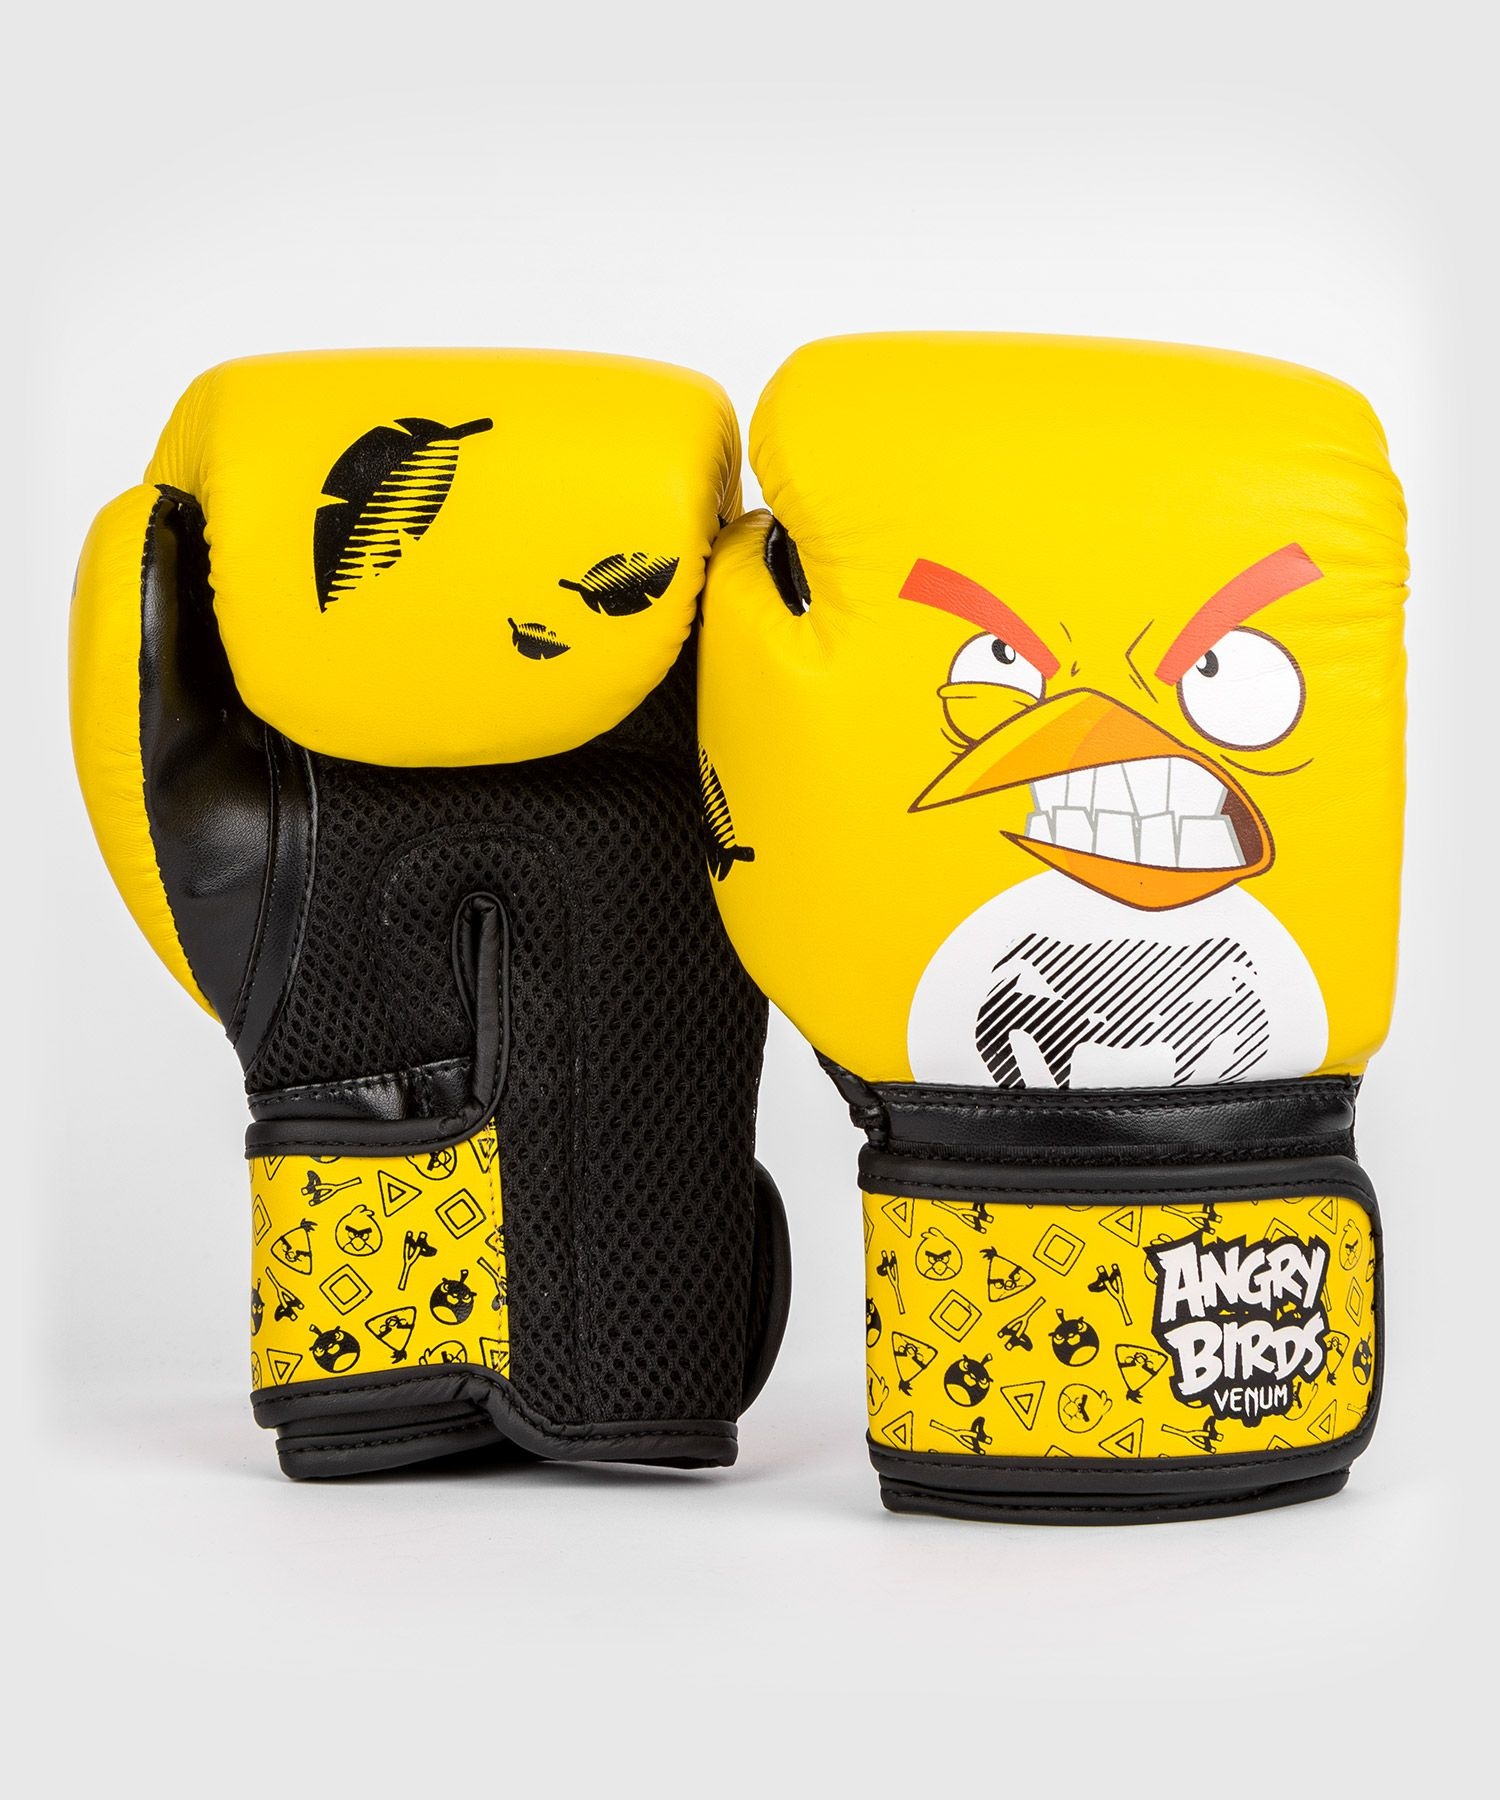 Venum Angry Birds Schwarz Boxhandschuhe SHOP Kinder FIGHTWEAR DEUTSCHLAND - Gelb